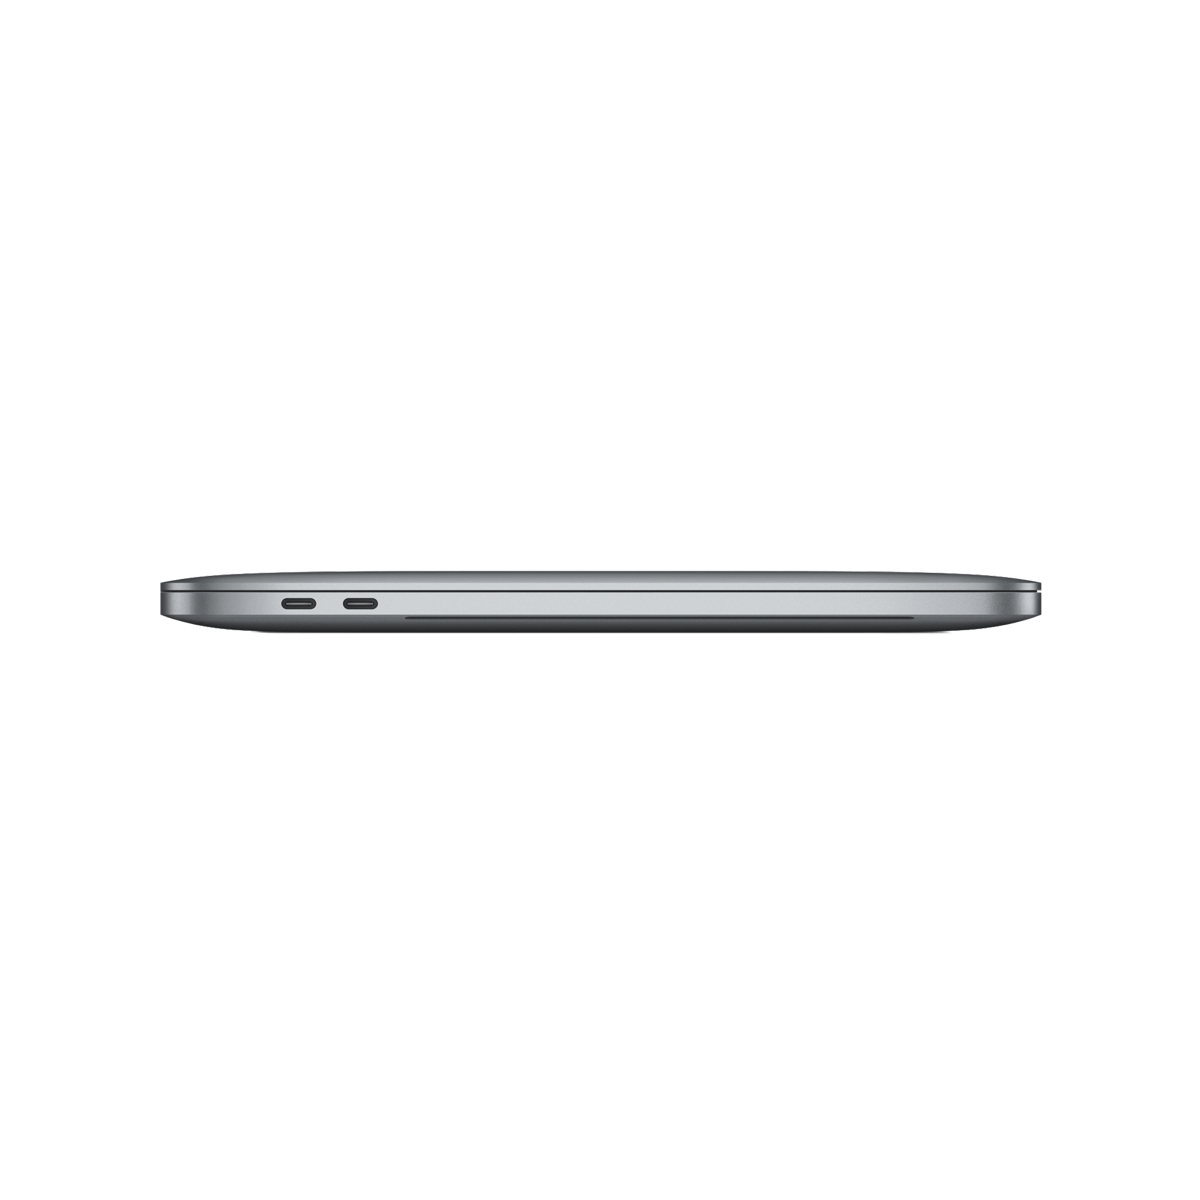 Refurbished MacBook Pro 16" Touchbar 2.3 16GB 1TB Spacegrijs - test-product-media-liquid1